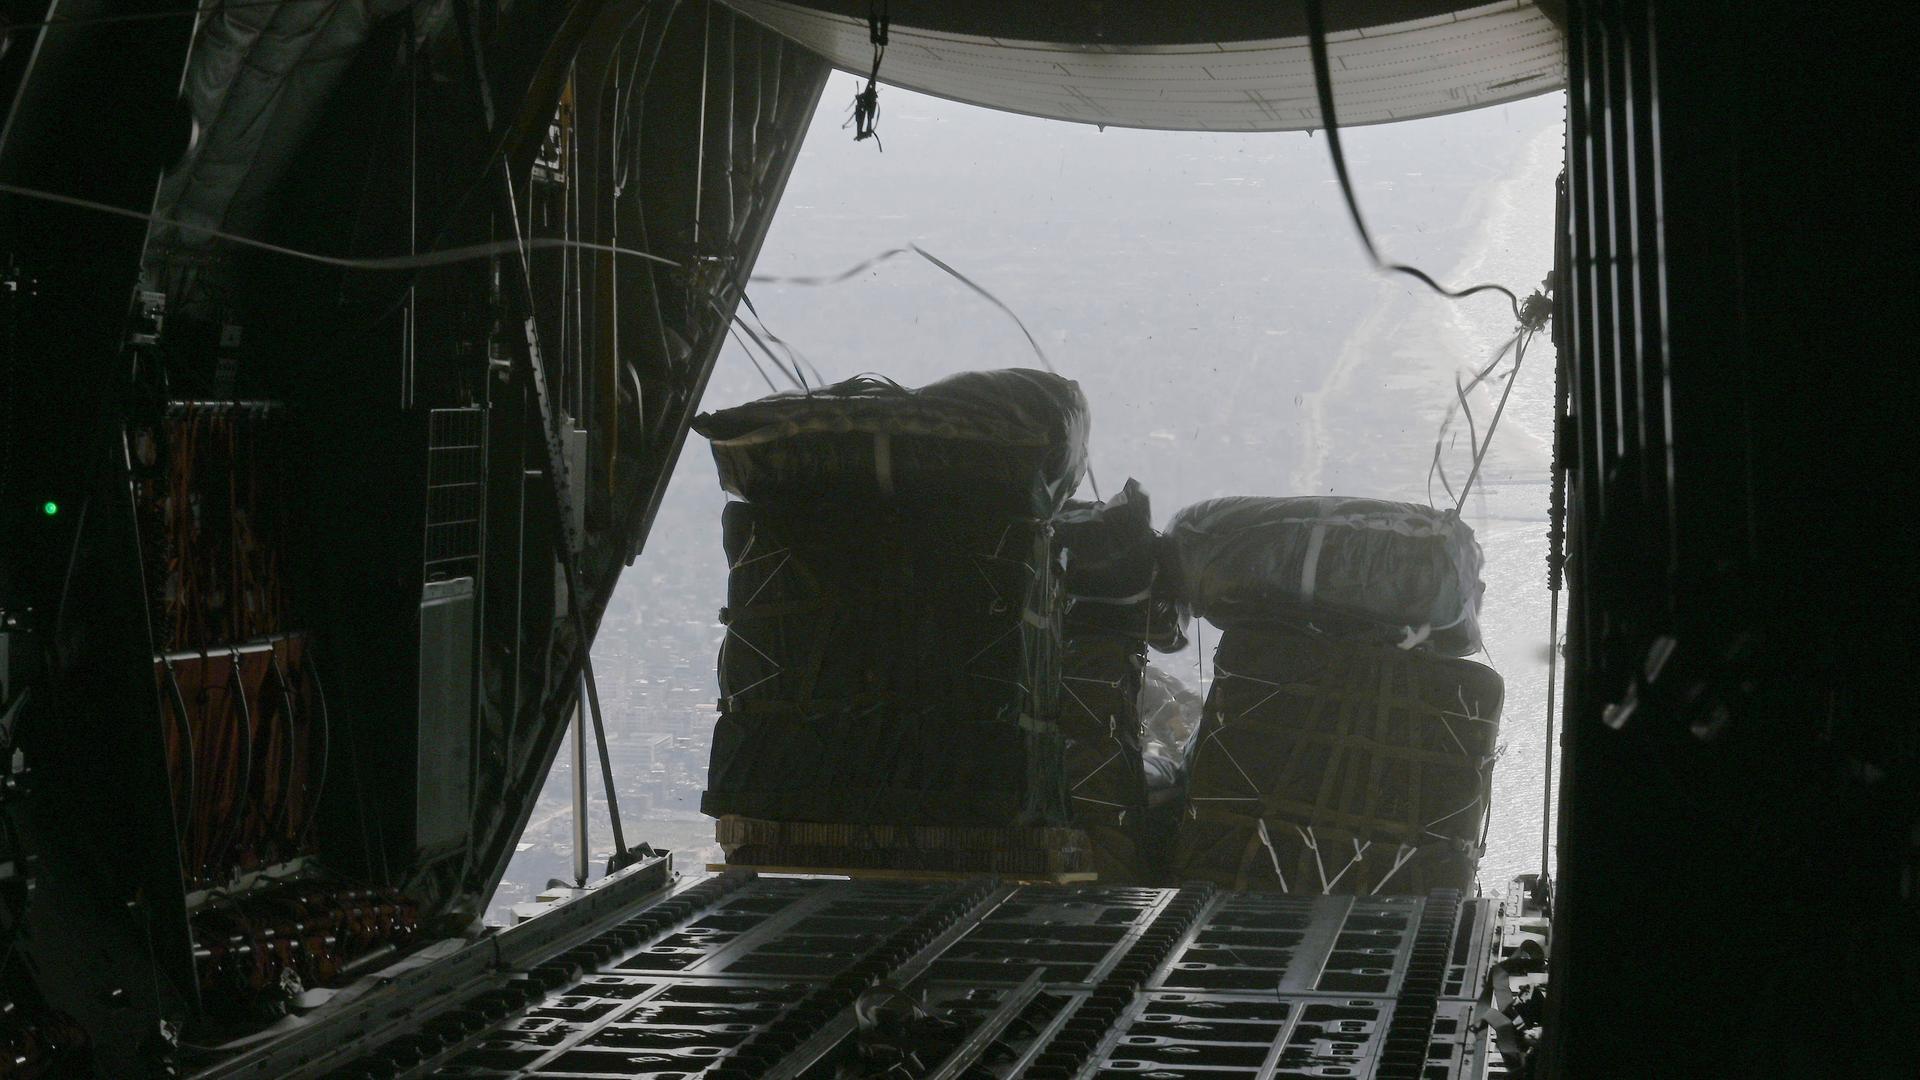 Pakete mit Hilfsgütern für Gaza werden aus einem Flugzeug geworfen.